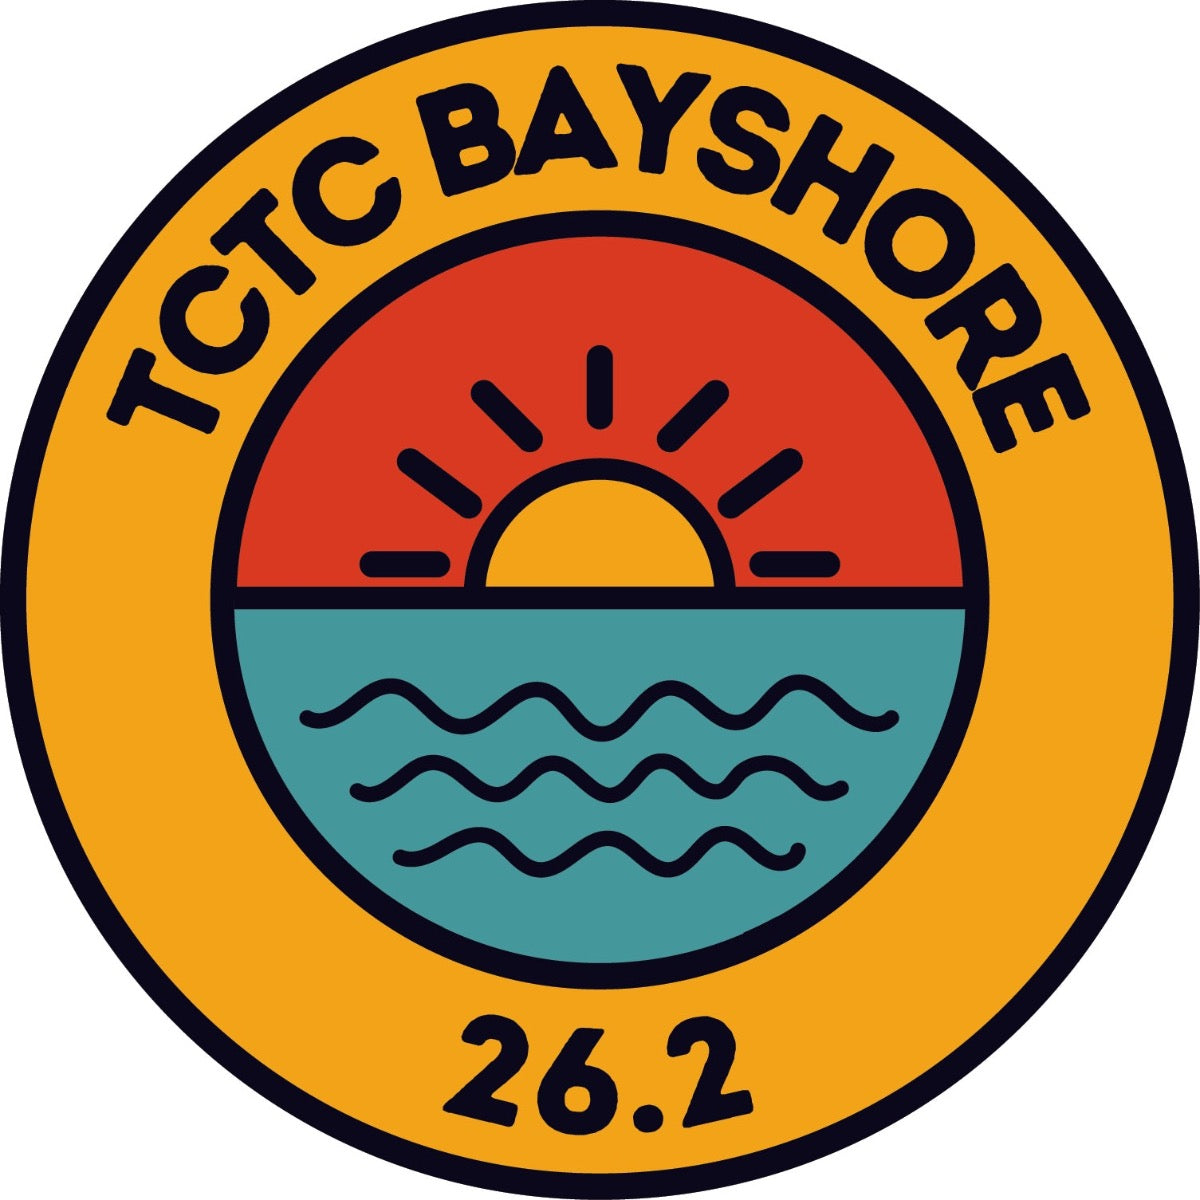 Bayshore Distance Sticker